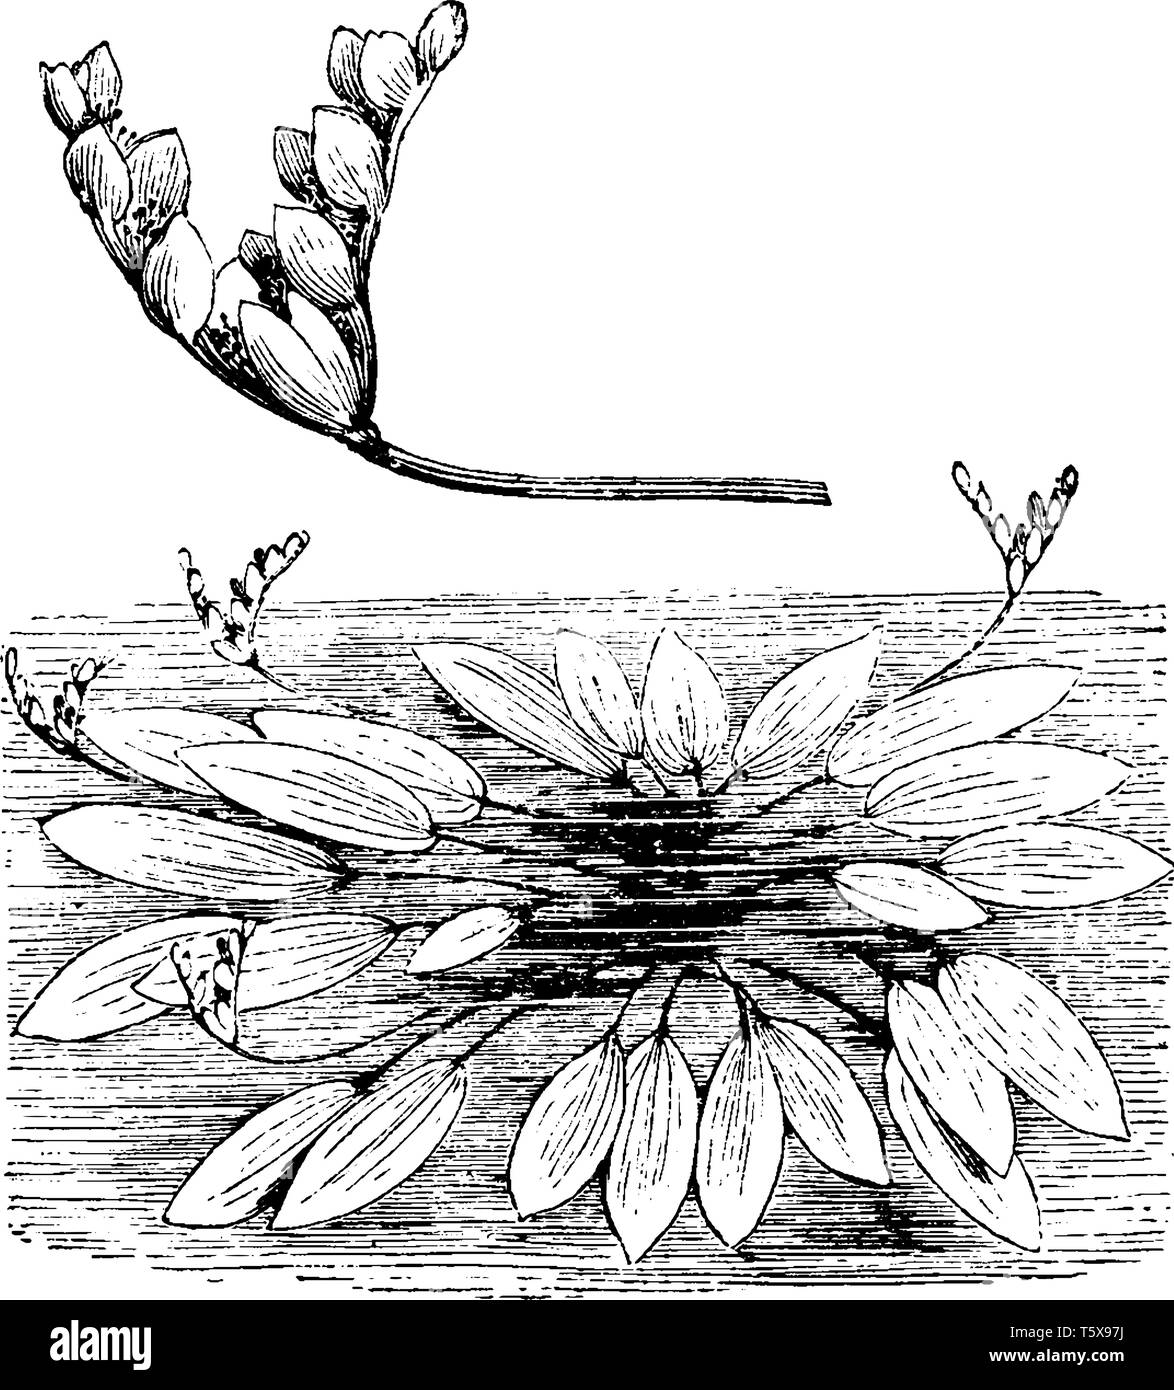 Une photo montre l'habitude et les pointes de fleurs d'Aponogeton Distachyon. C'est une plante aquatique. Cette fleur n'a pas de pétales, mais les bractées sont blanches avec un p Illustration de Vecteur